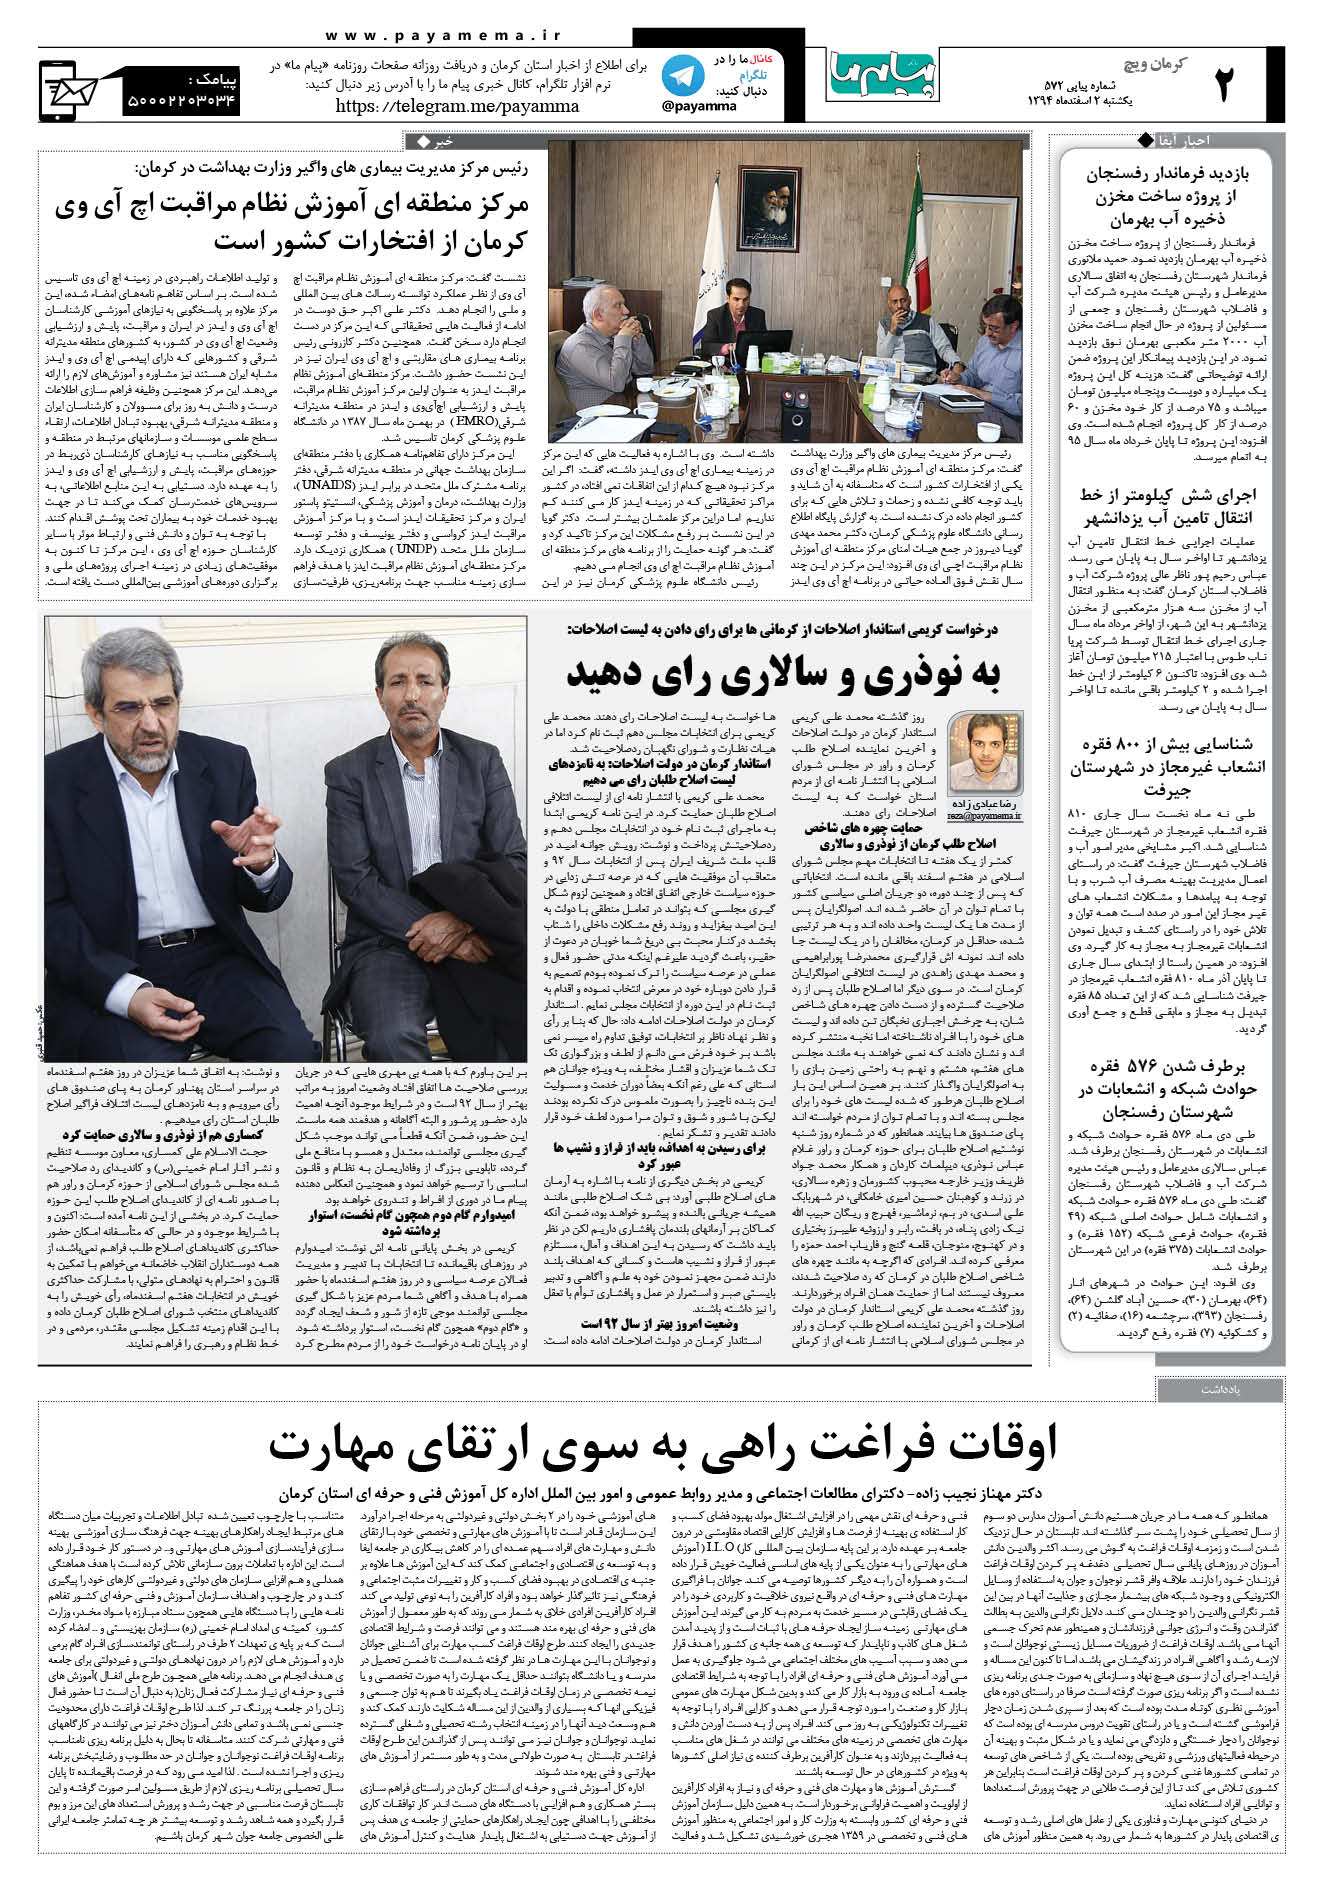 صفحه کرمان ویج شماره 572 روزنامه پیام ما